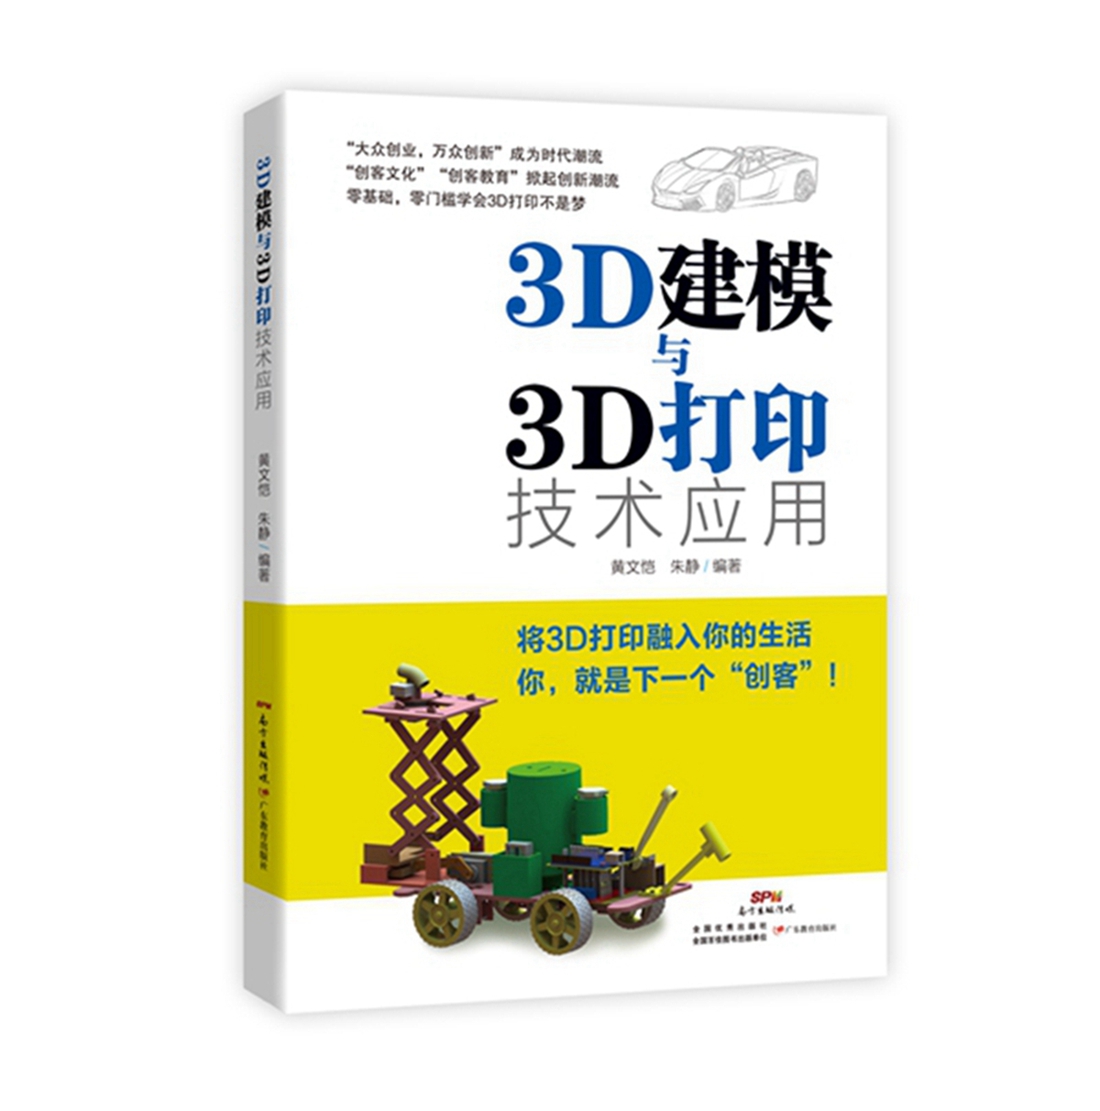 3D建模与3D打印技术应用图书